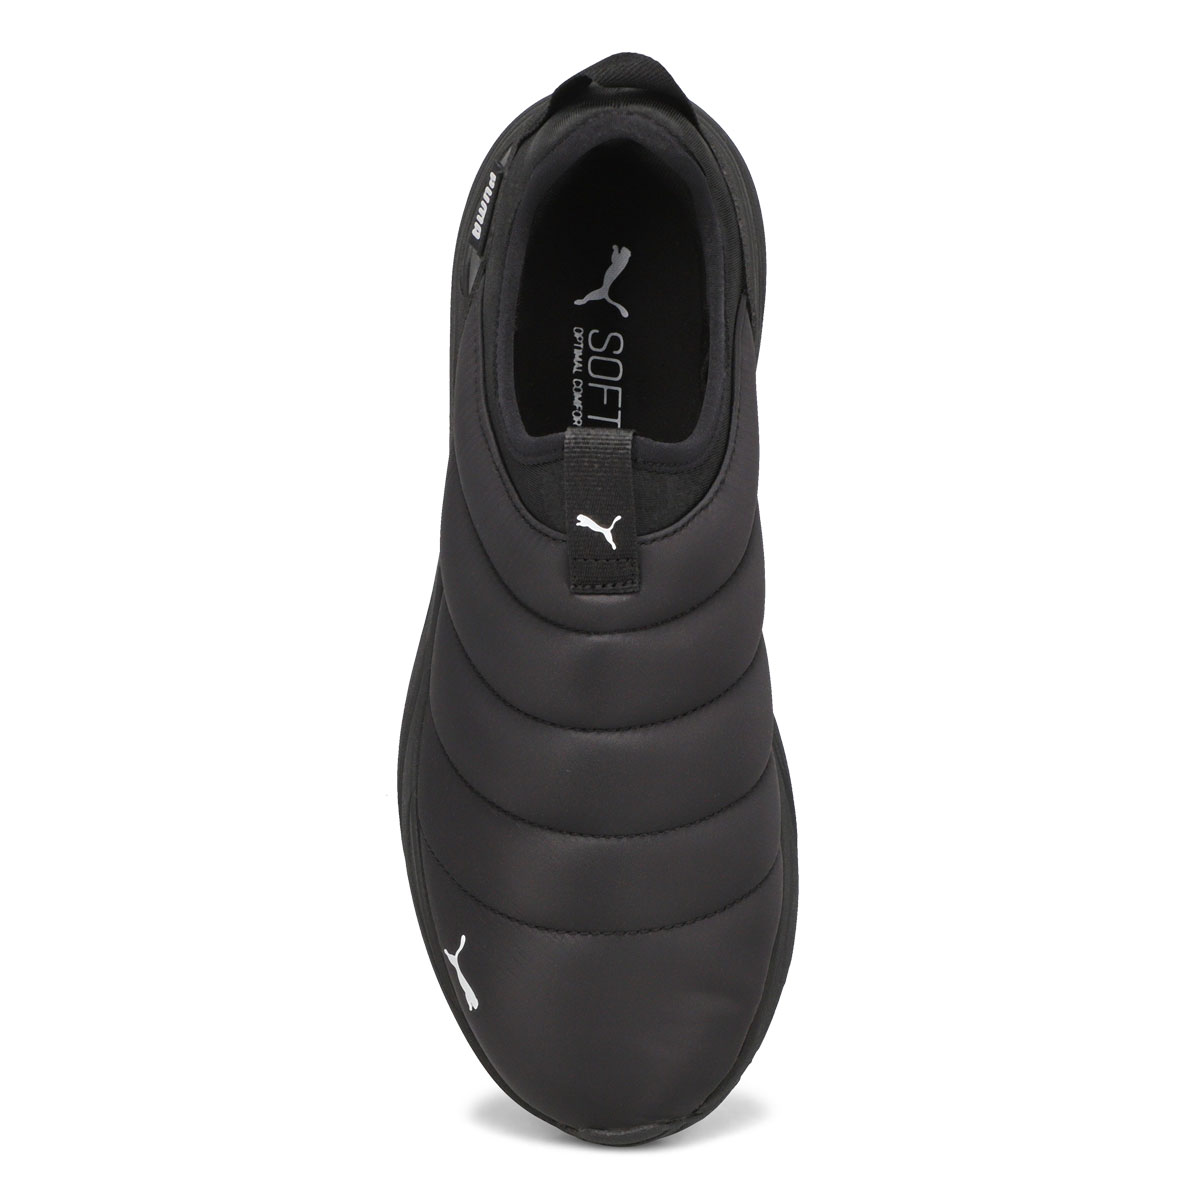 Men's Avionic Slip On Sneaker - Black/White